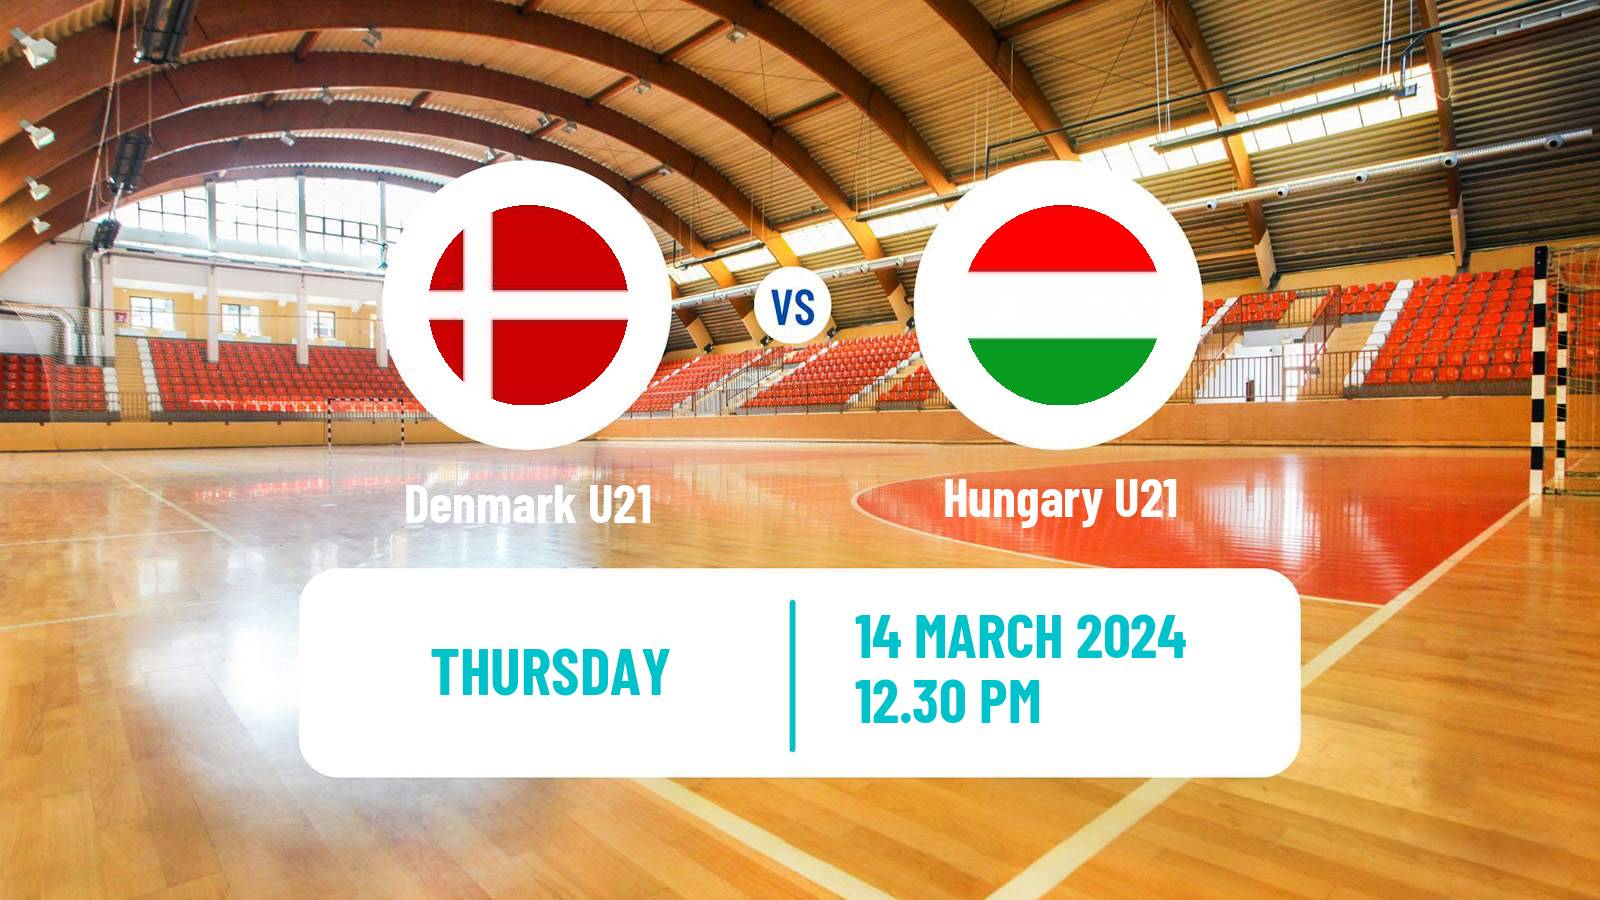 Handball Friendly International Handball Denmark U21 - Hungary U21